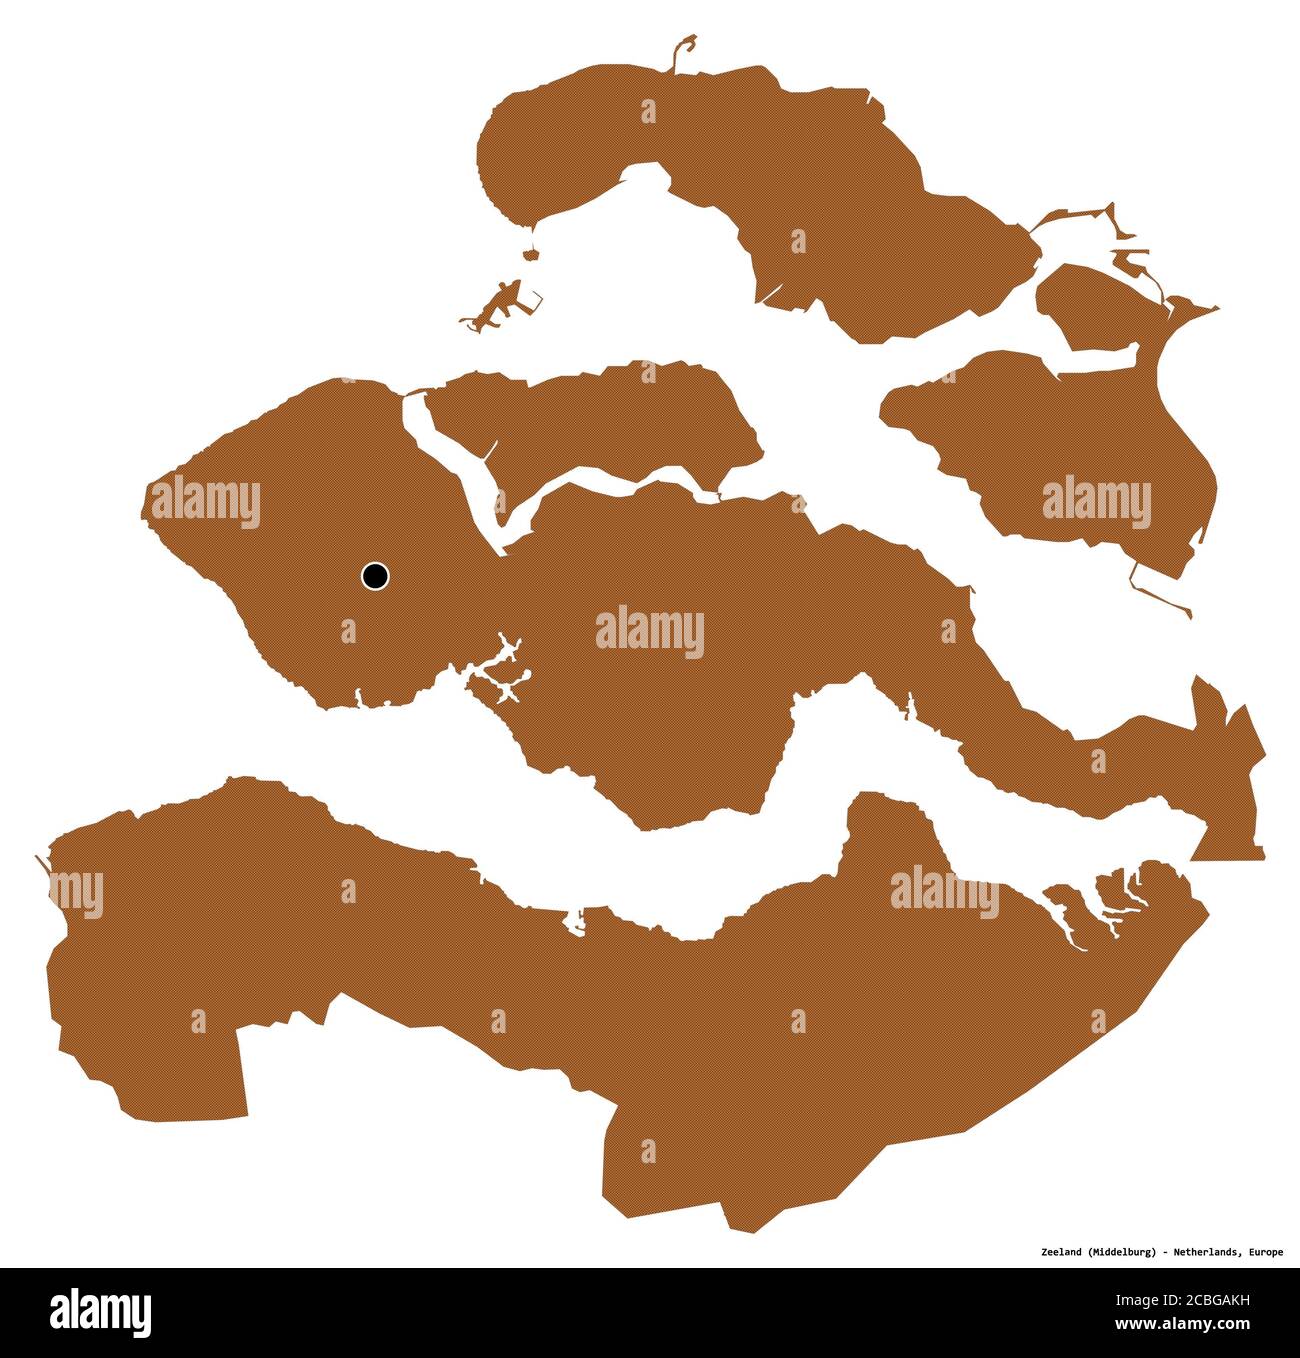 Forme de Zélande, province des pays-Bas, avec sa capitale isolée sur fond blanc. Composition des textures répétées. Rendu 3D Banque D'Images